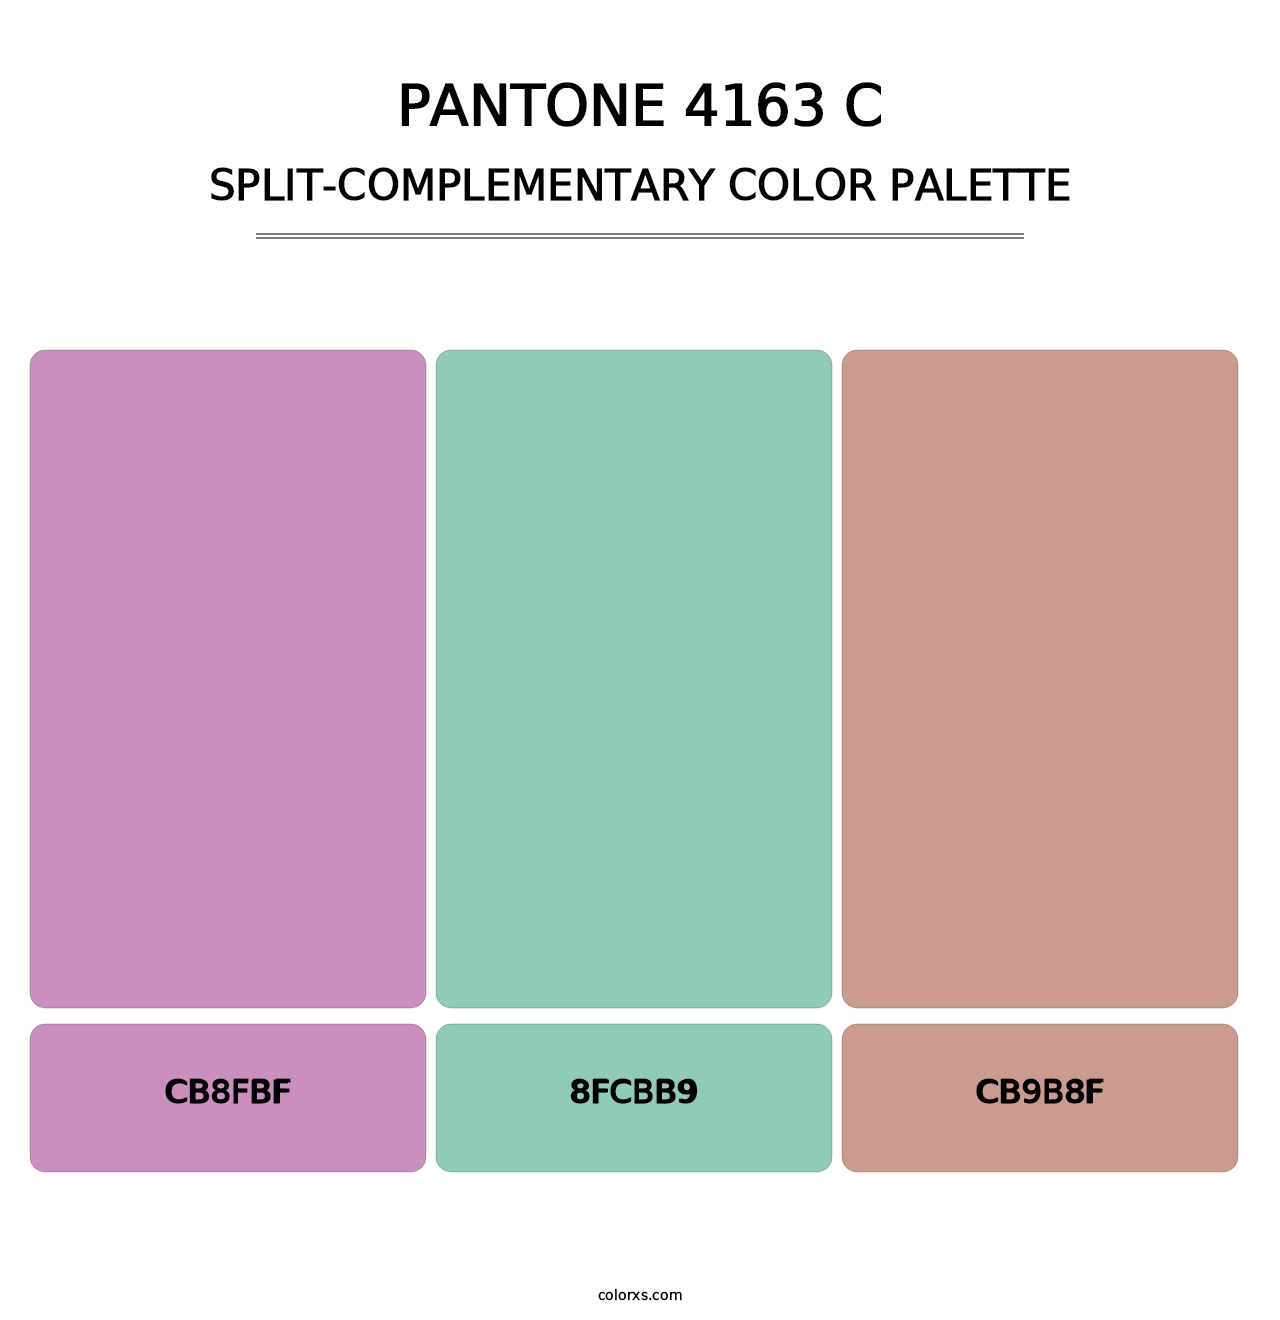 PANTONE 4163 C - Split-Complementary Color Palette